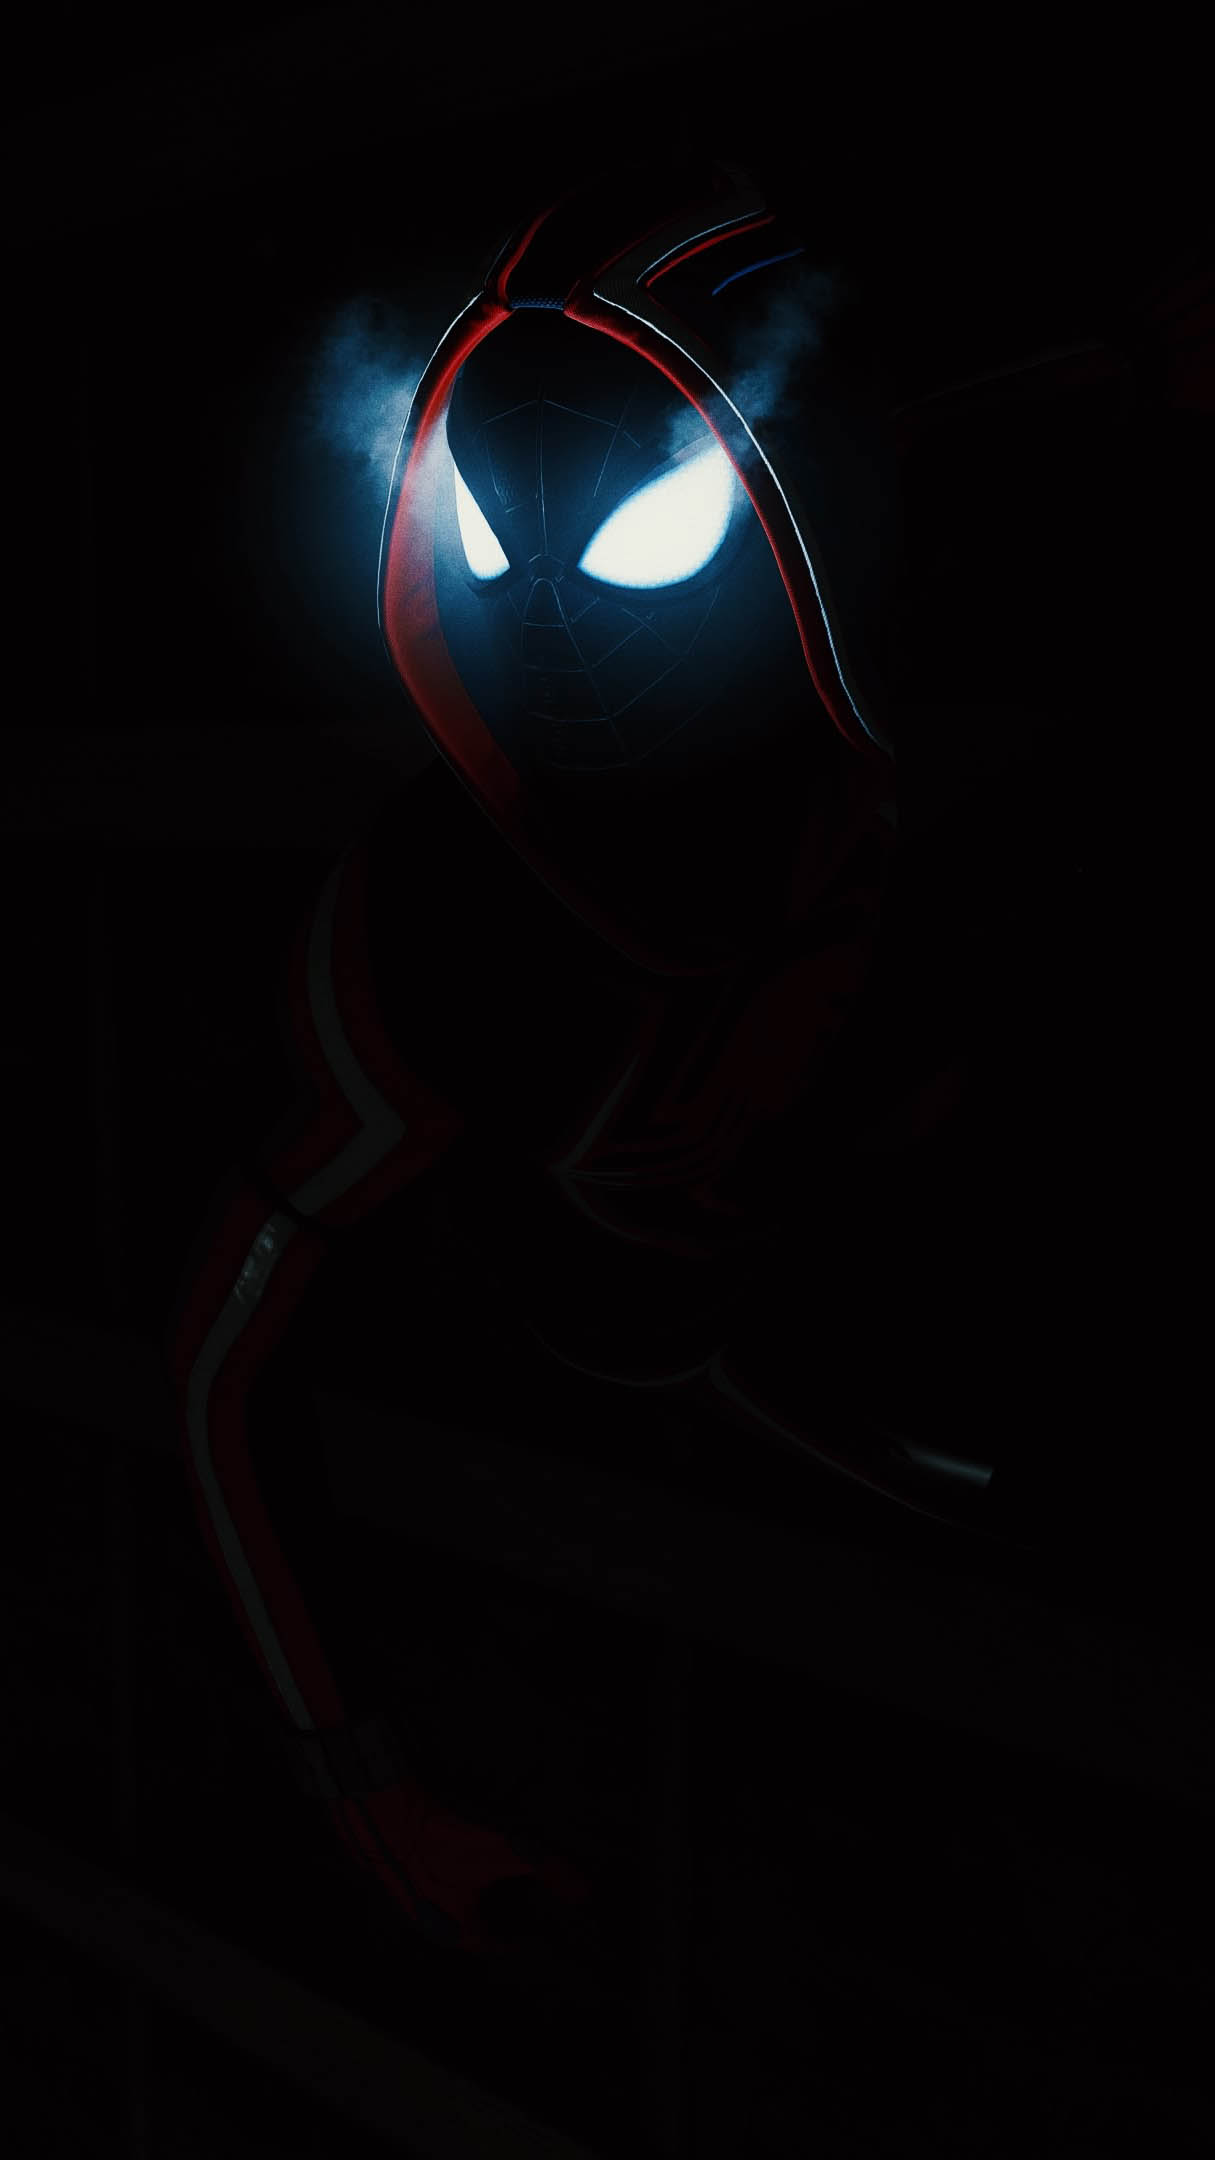 Dark Spiderman Glowing Eyes Wallpaper, iPhone Wallpaper